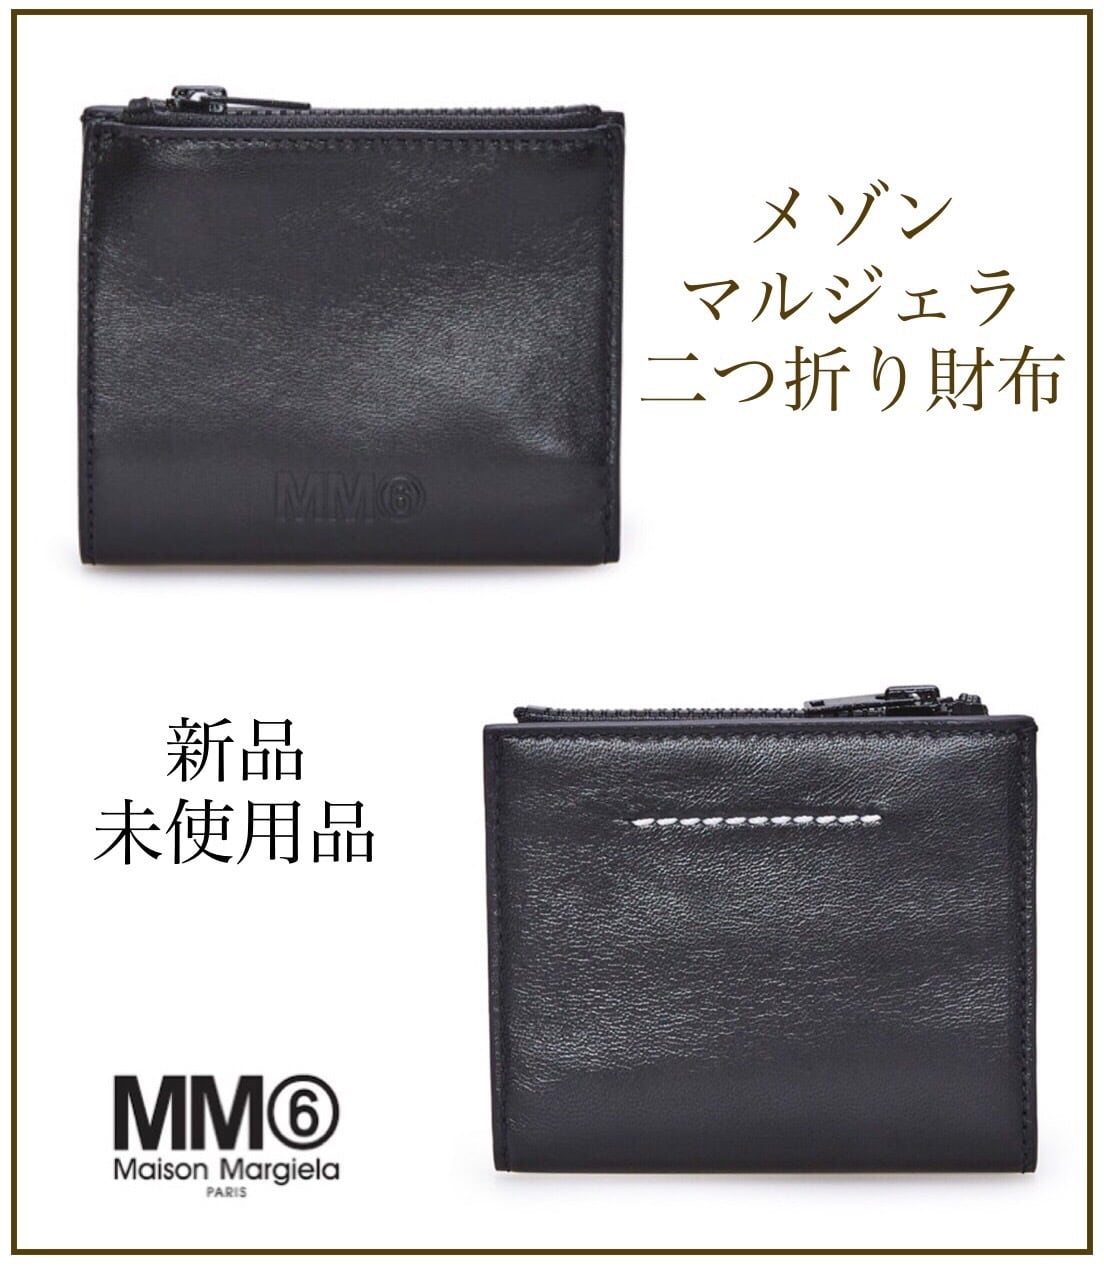 Maison Margielaメゾンマルジェラmm6 二つ折り財布